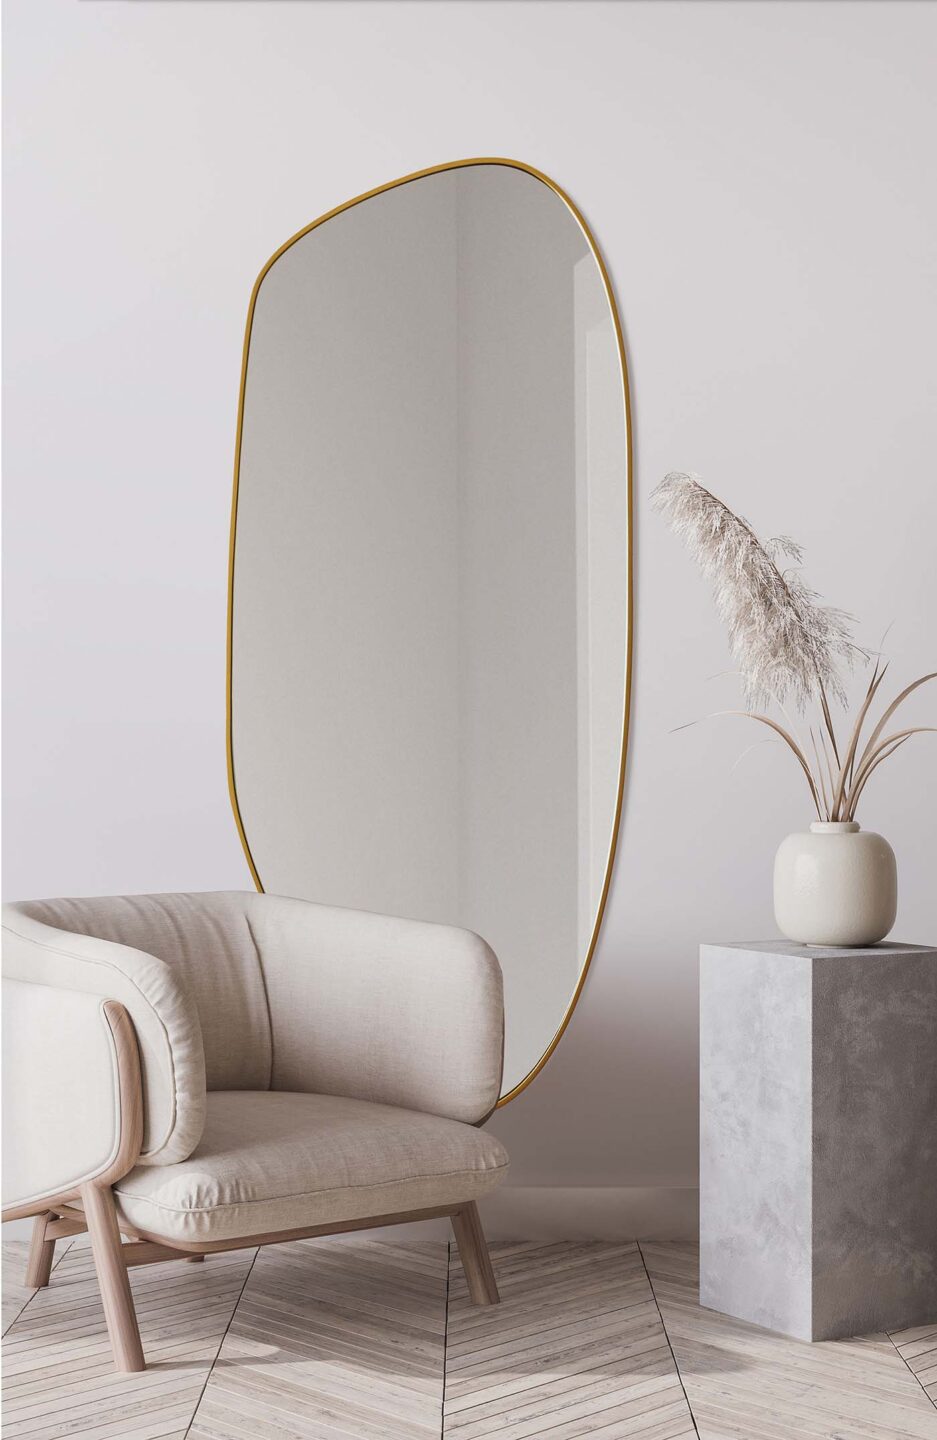 lustro o organicznym kształcie w złotej ramie przy beżowym fotelu